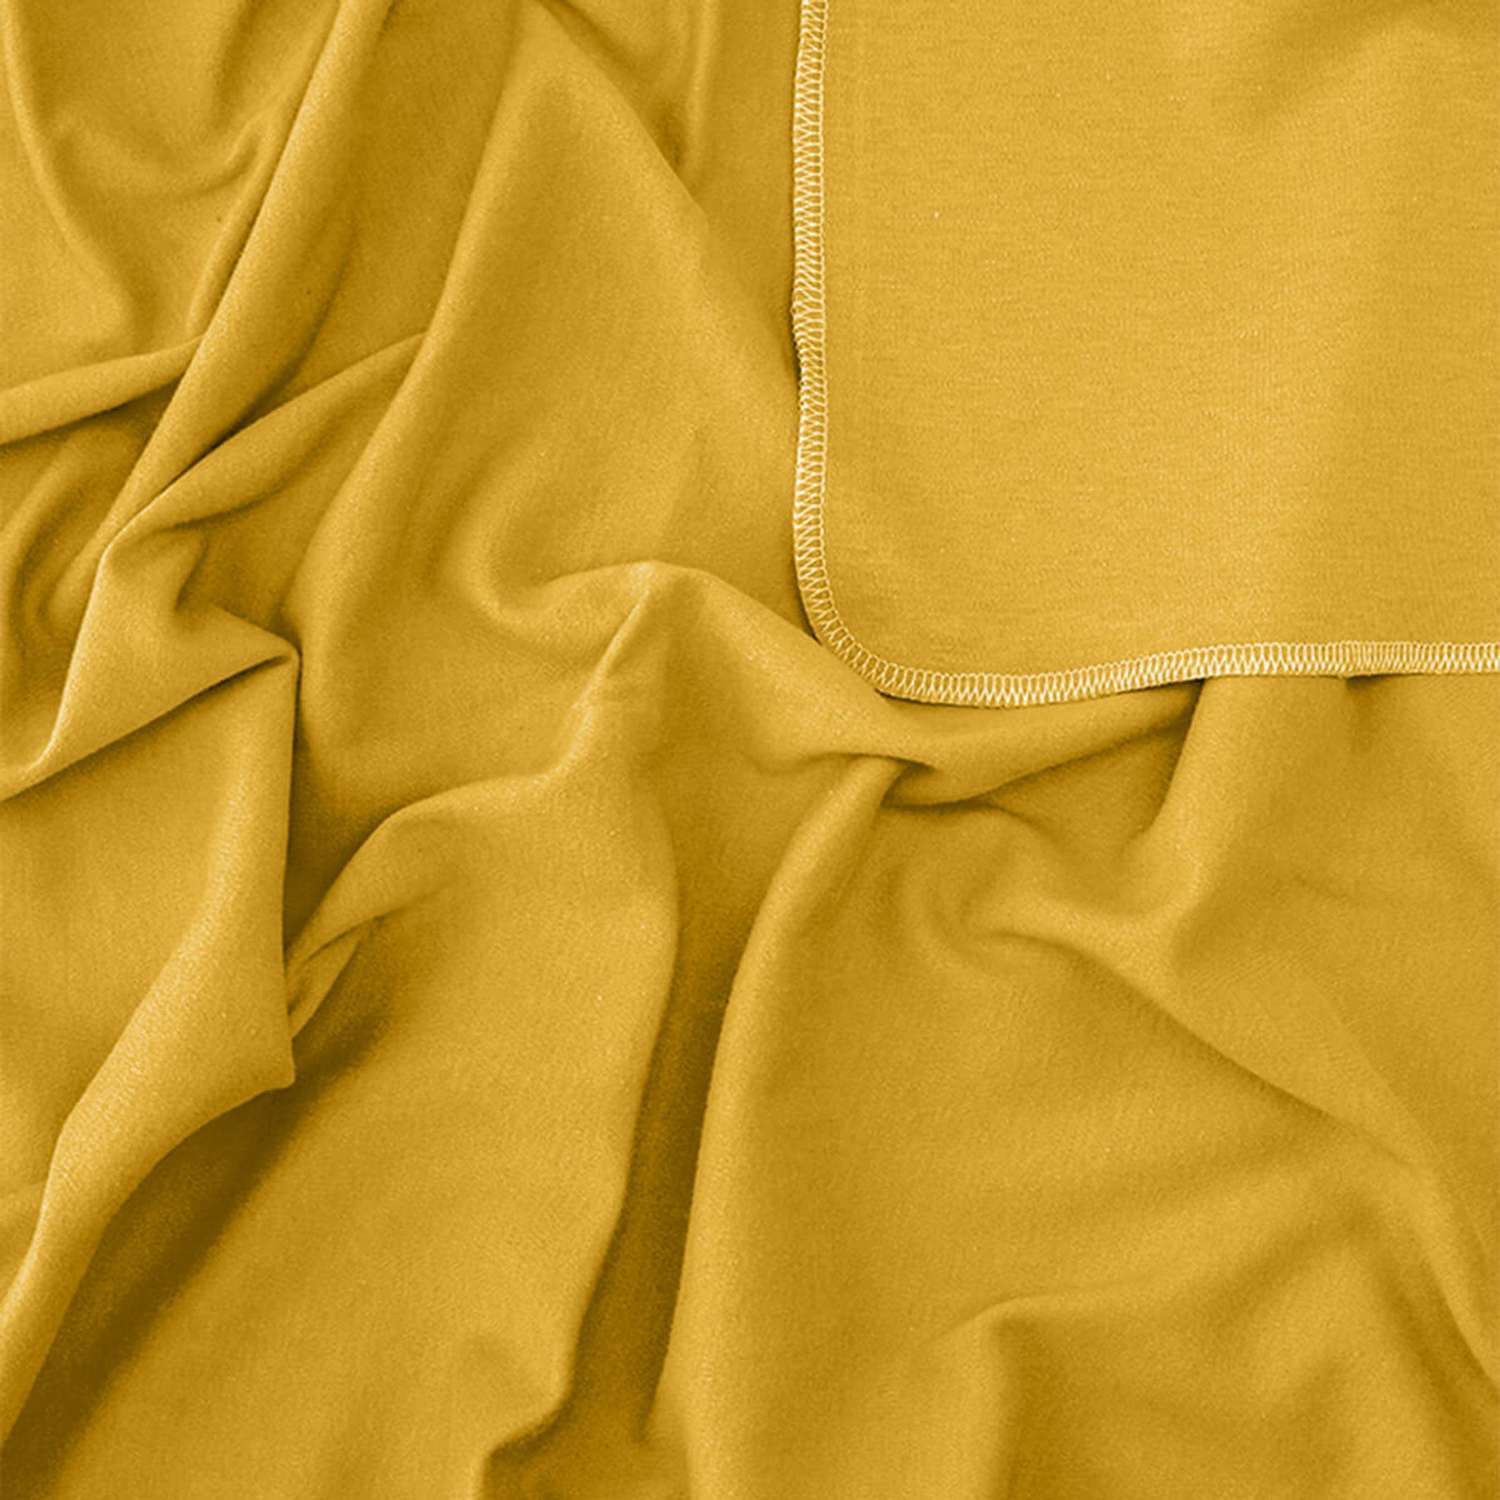 Комплект пелёнок Mjolk Зонтики/Mustard/Звезды сет из 3х штук 80*80 - фото 4